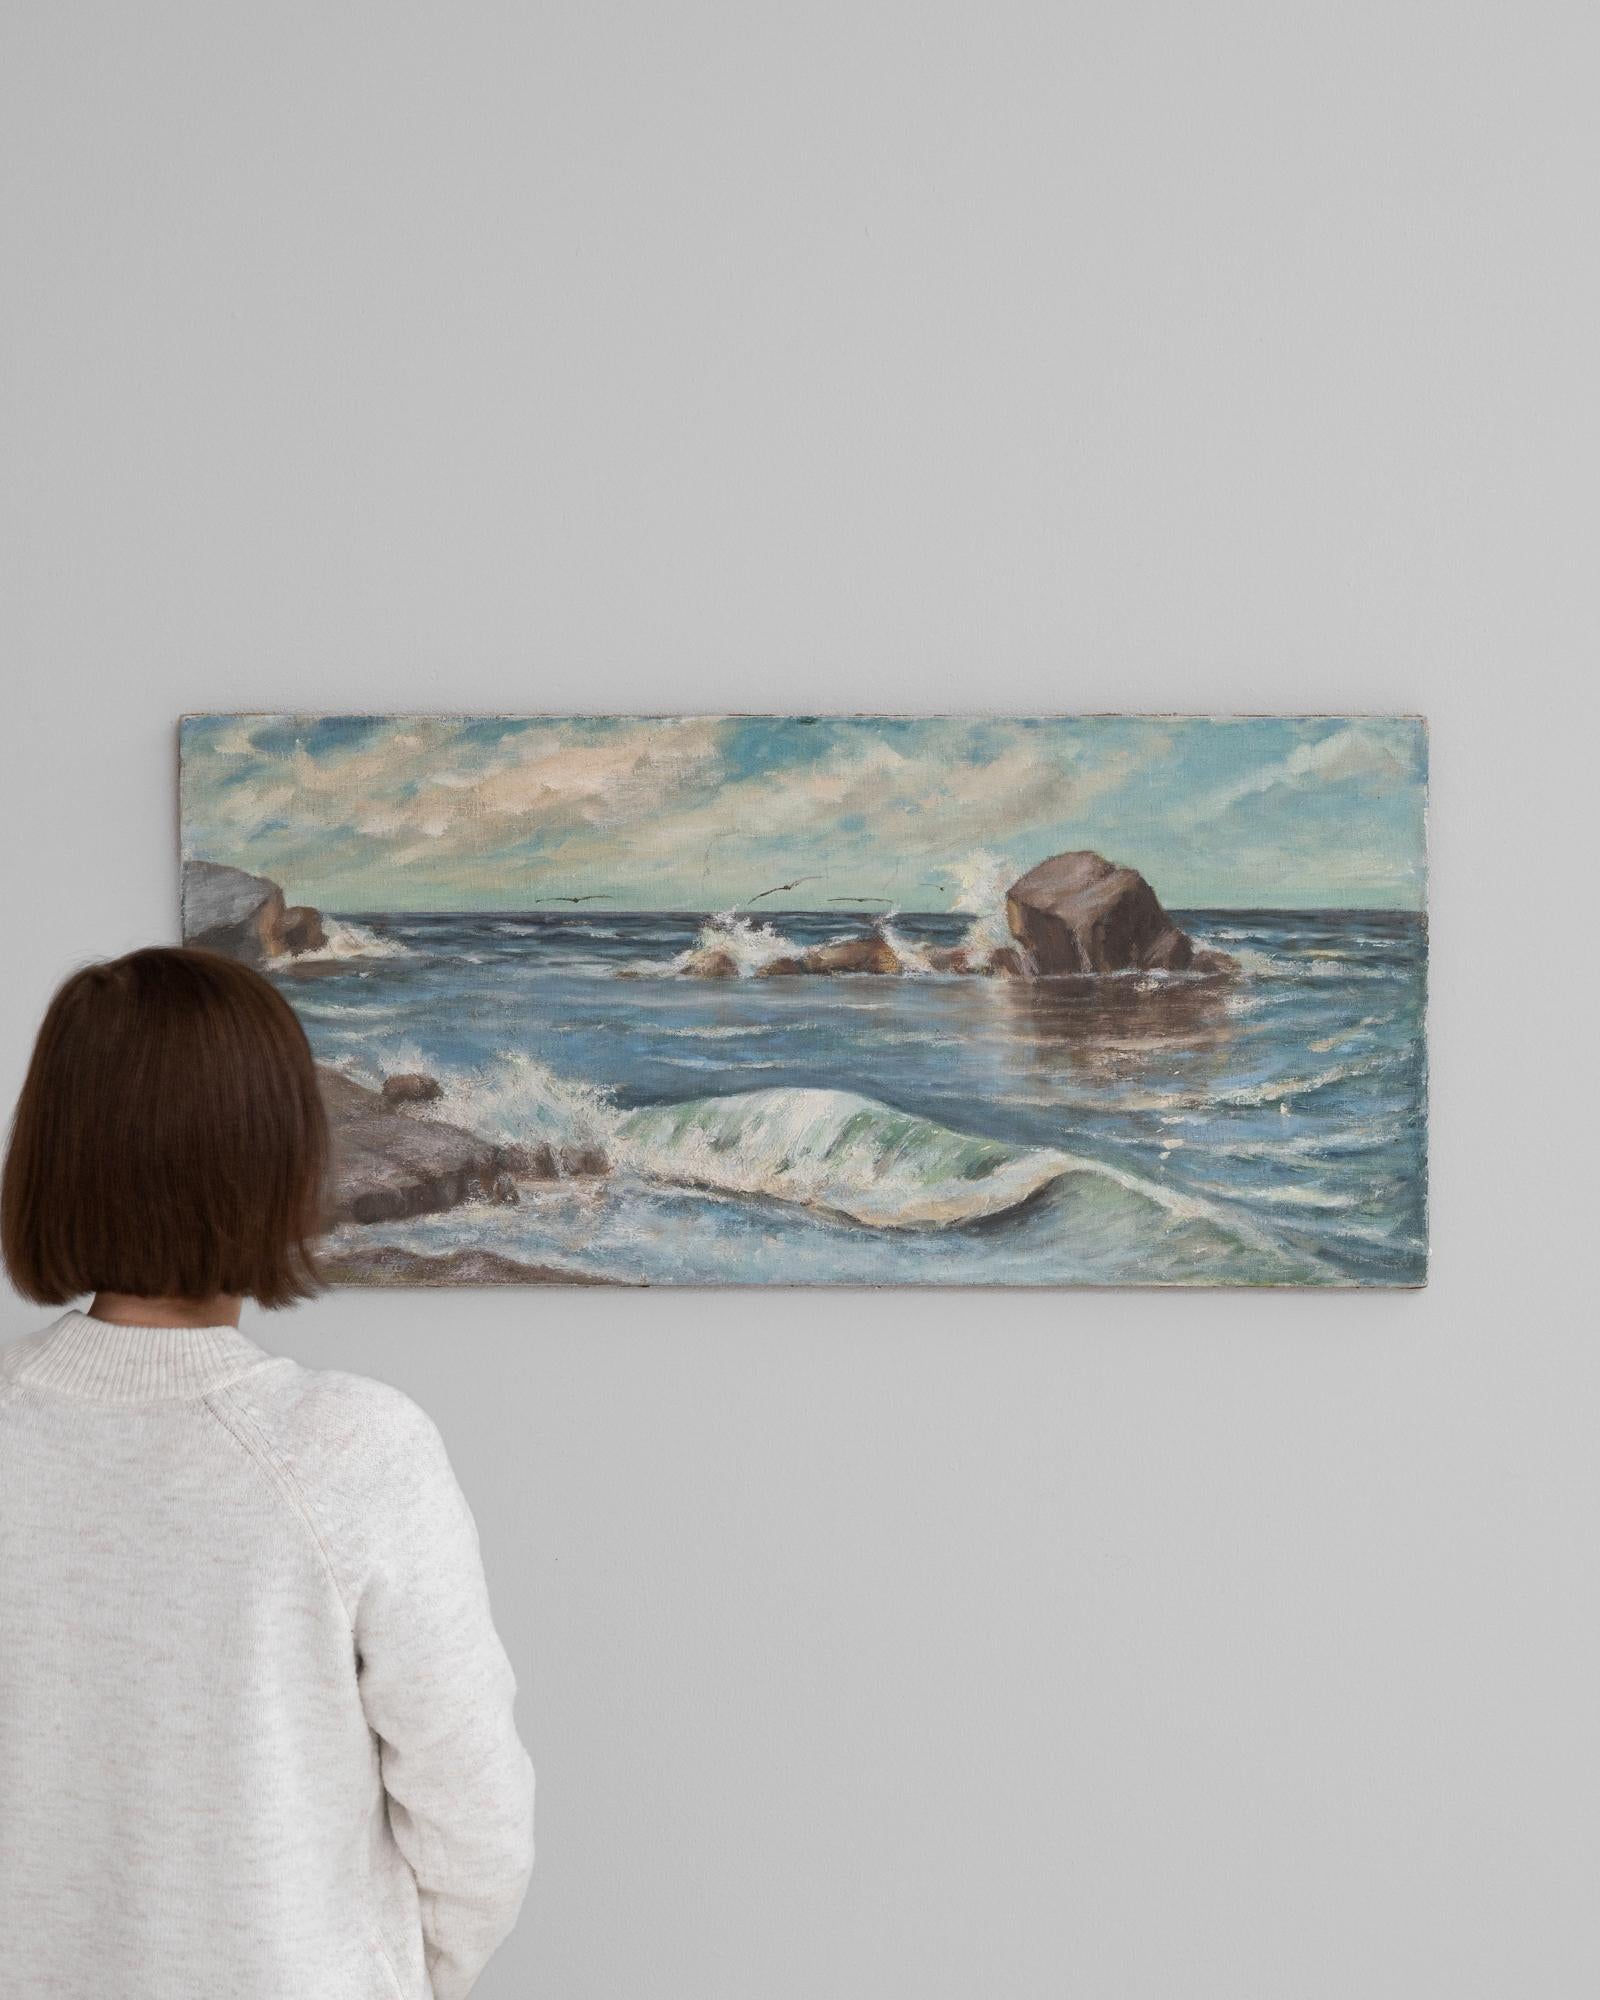 Faites entrer l'attrait captivant du bord de mer français dans votre maison avec cette étonnante peinture française du début du XXe siècle. La toile est animée par la beauté turbulente de l'océan, chaque coup de pinceau capturant méticuleusement